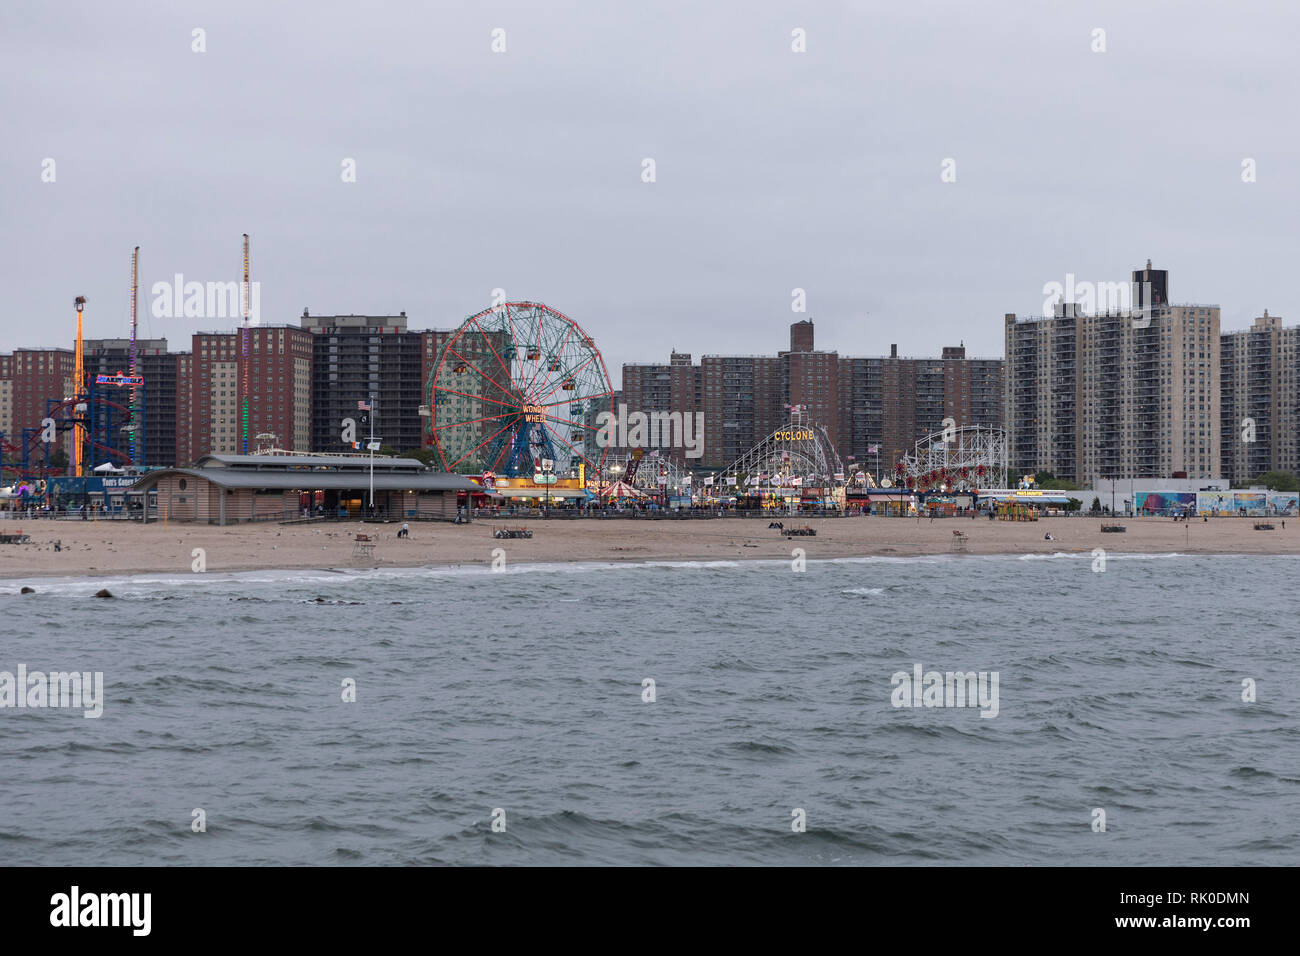 Il luna park di Coney Island. La città di New York, Stati Uniti d'America Foto Stock